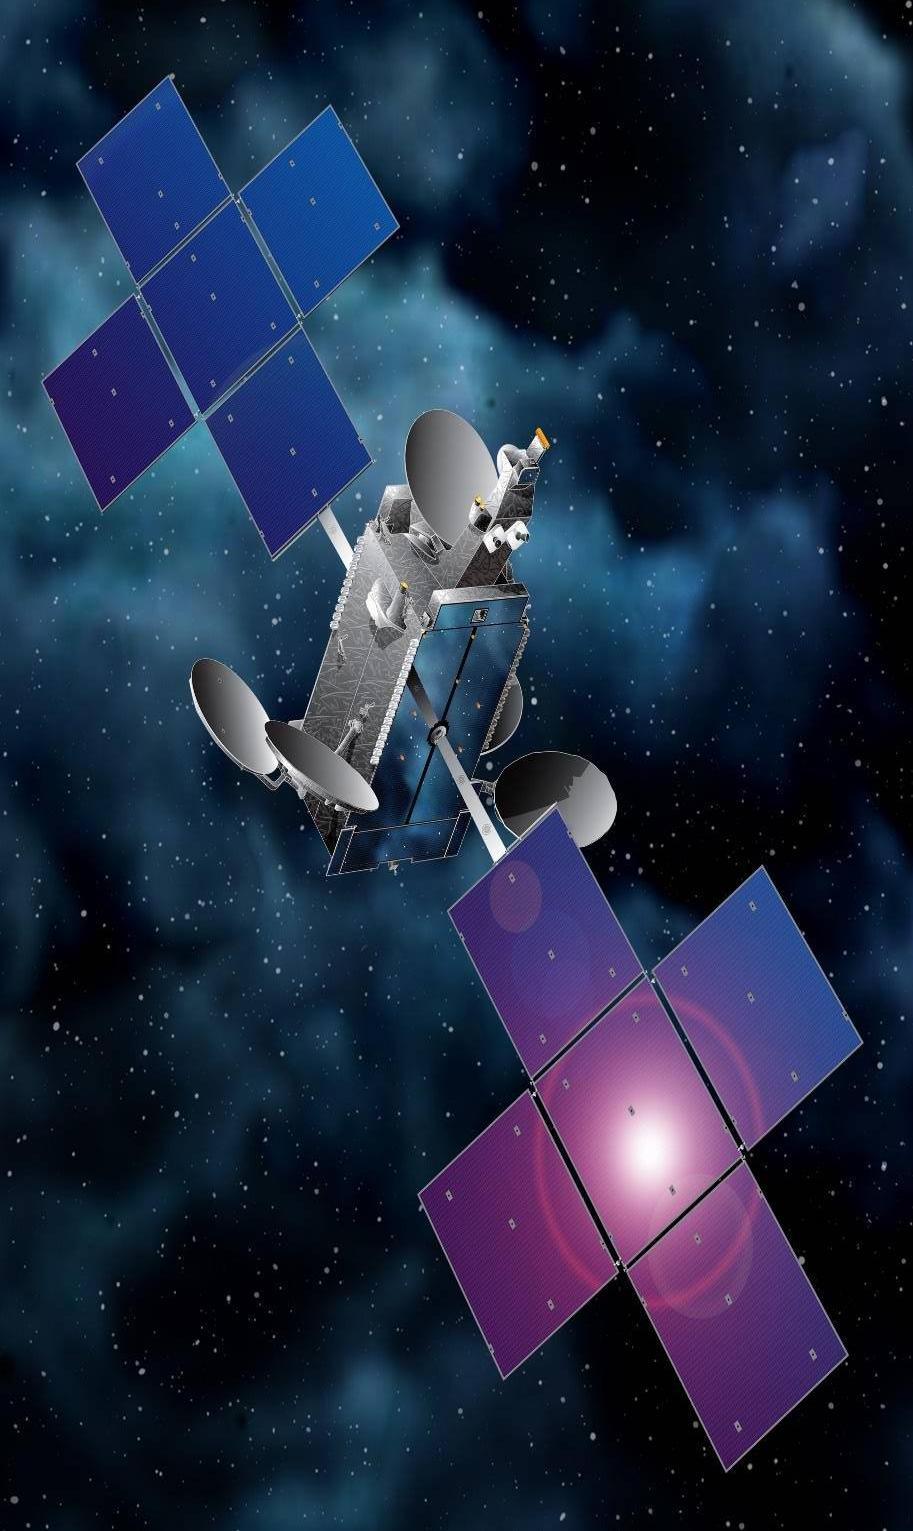 Twee Galileo's in de neuskegel van een Sojoez raket In de neuskegel bevond zich de communicatiesatelliet Eutelsat 65 West A met een gewicht van 6654 kg.